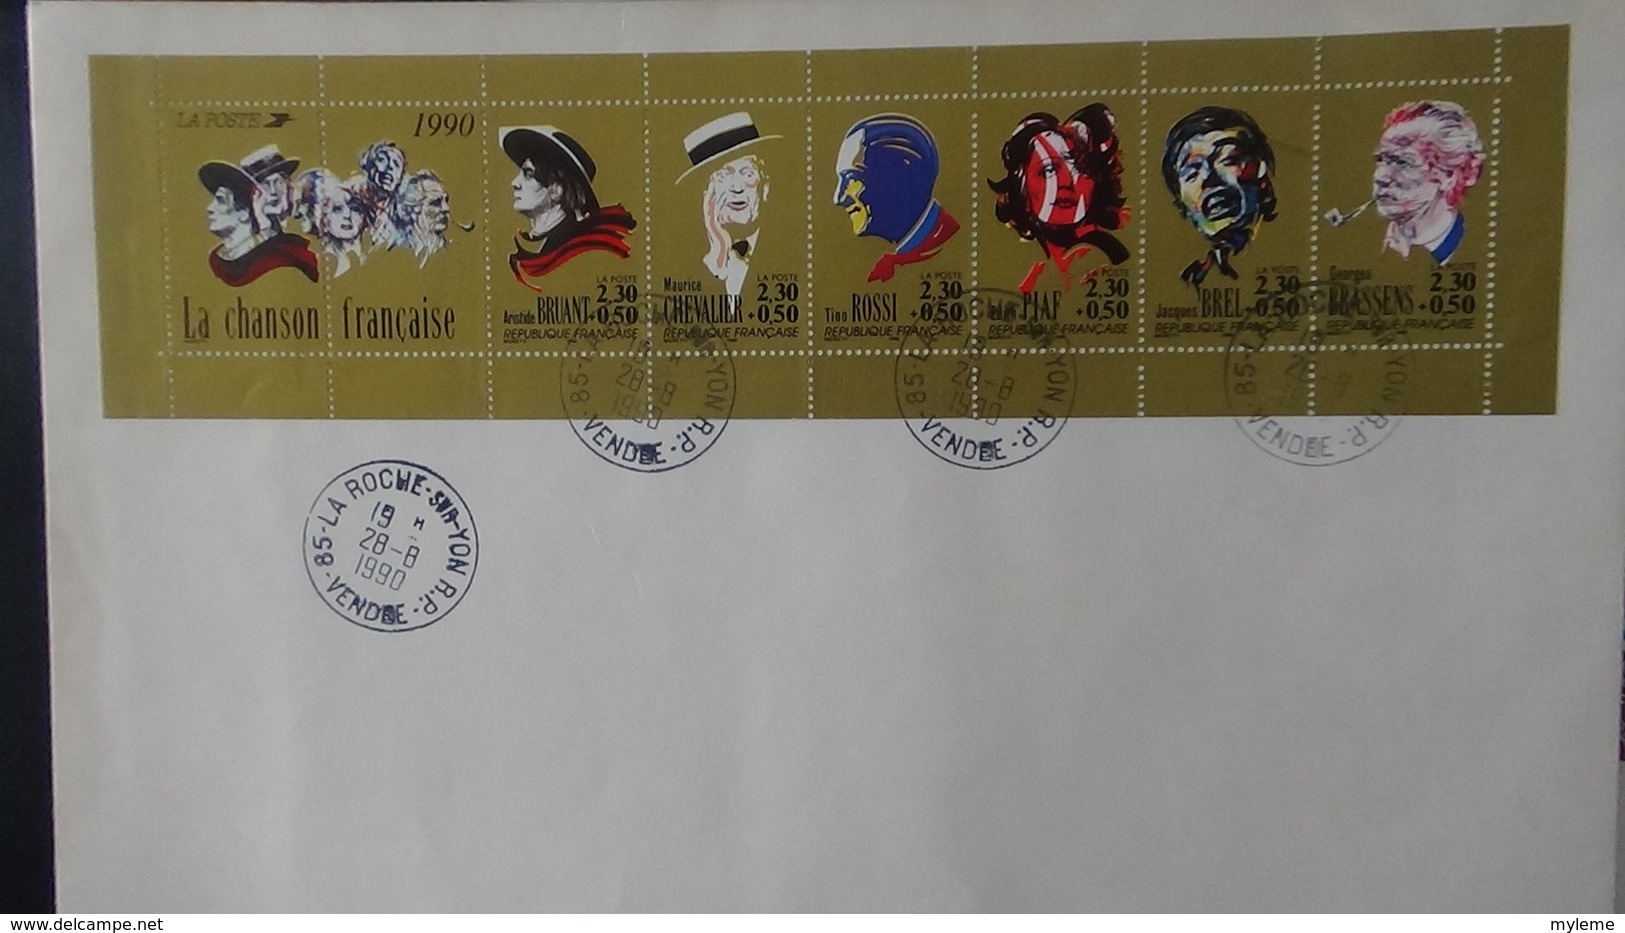 France timbres, blocs et carnets avec pour la plupart, de belles oblitérations. A saisir !!!